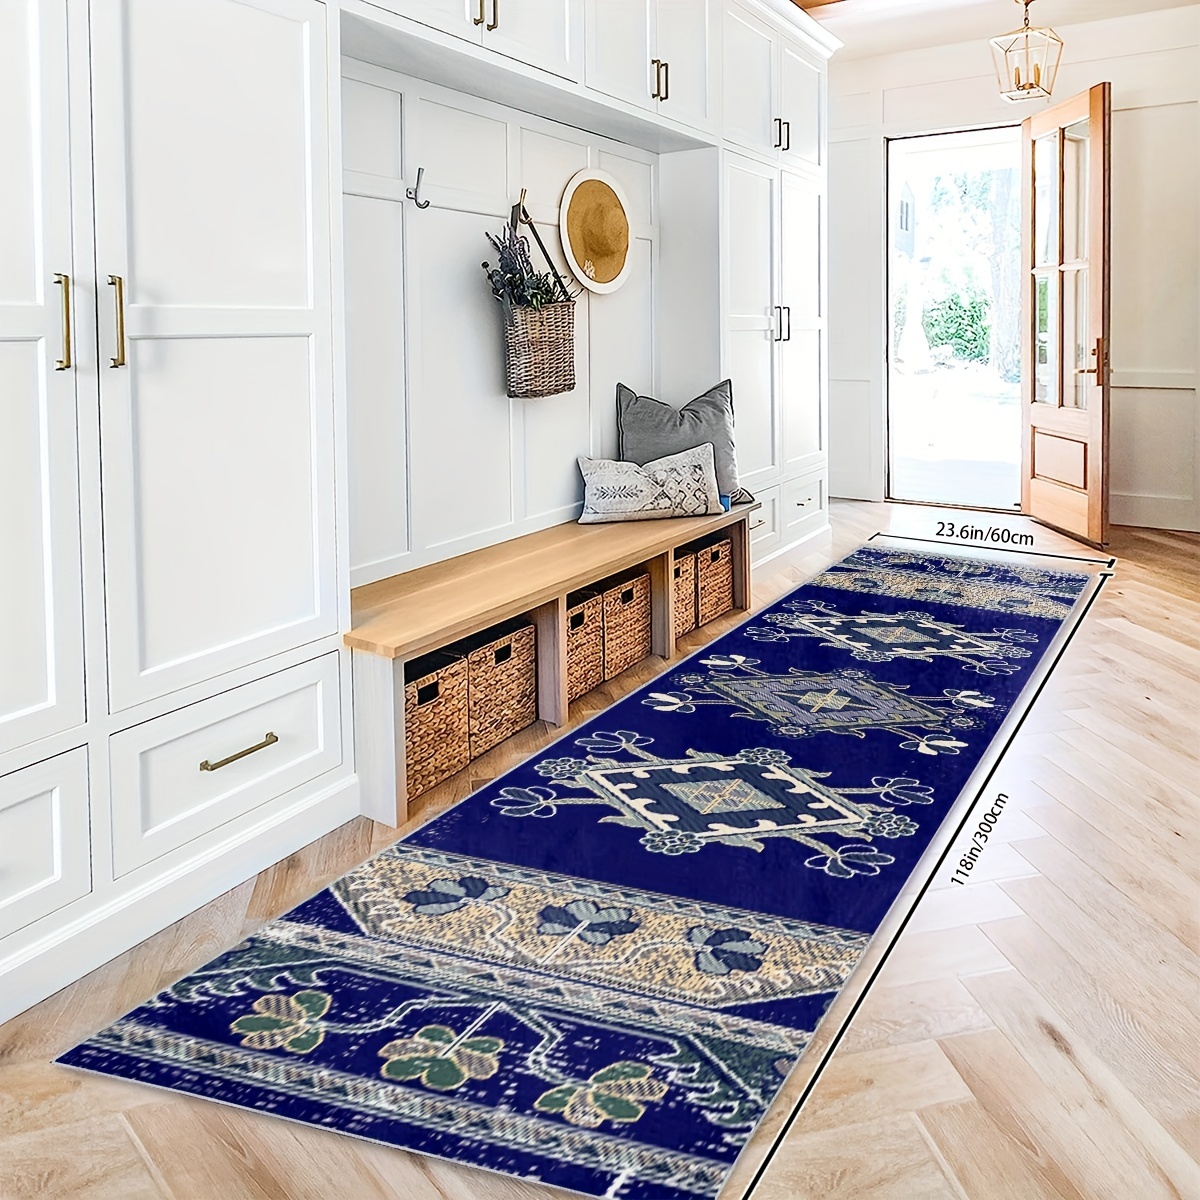 Morocco Print Kitchen Carpet Mat Geometric Runner Rug For Bedroom